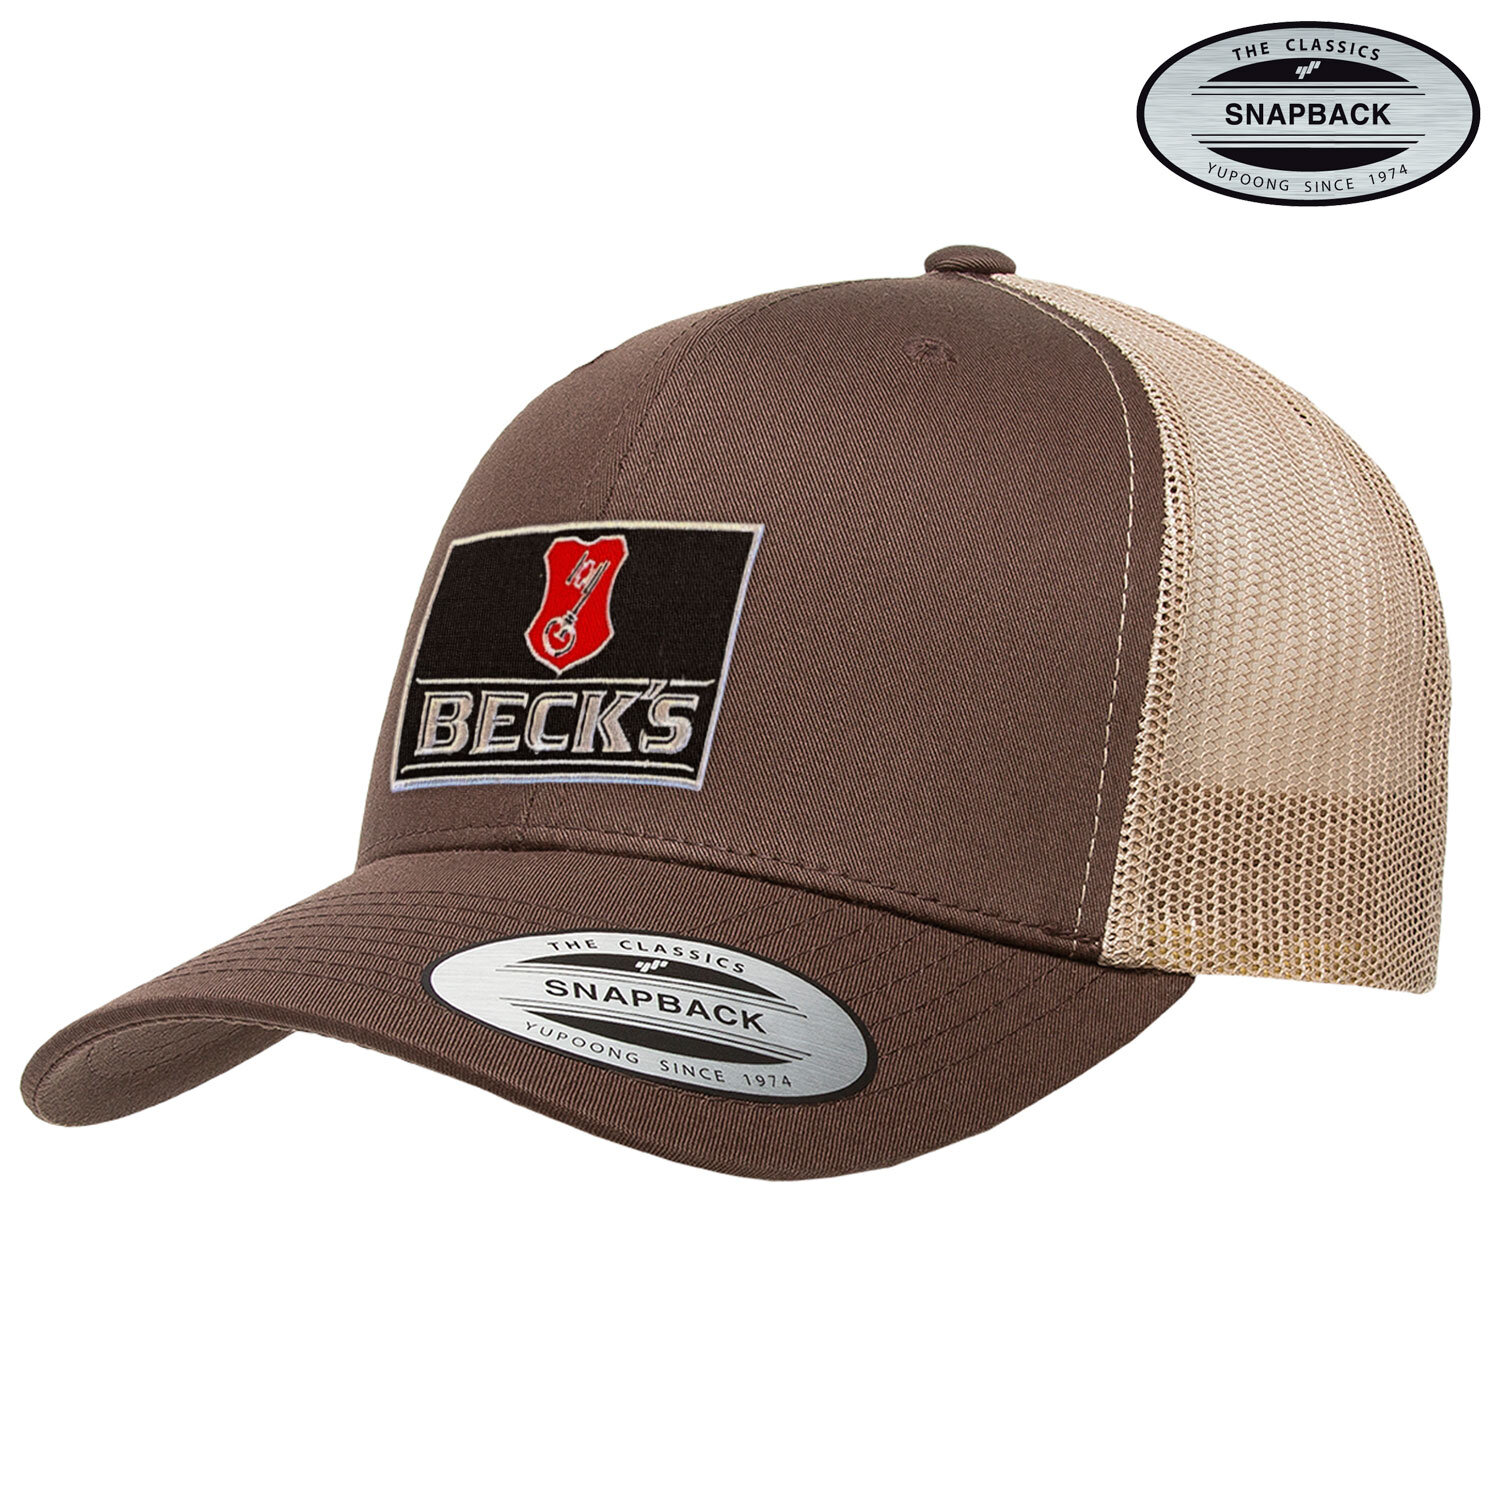 Beck's Beer Patch Premium Trucker Cap